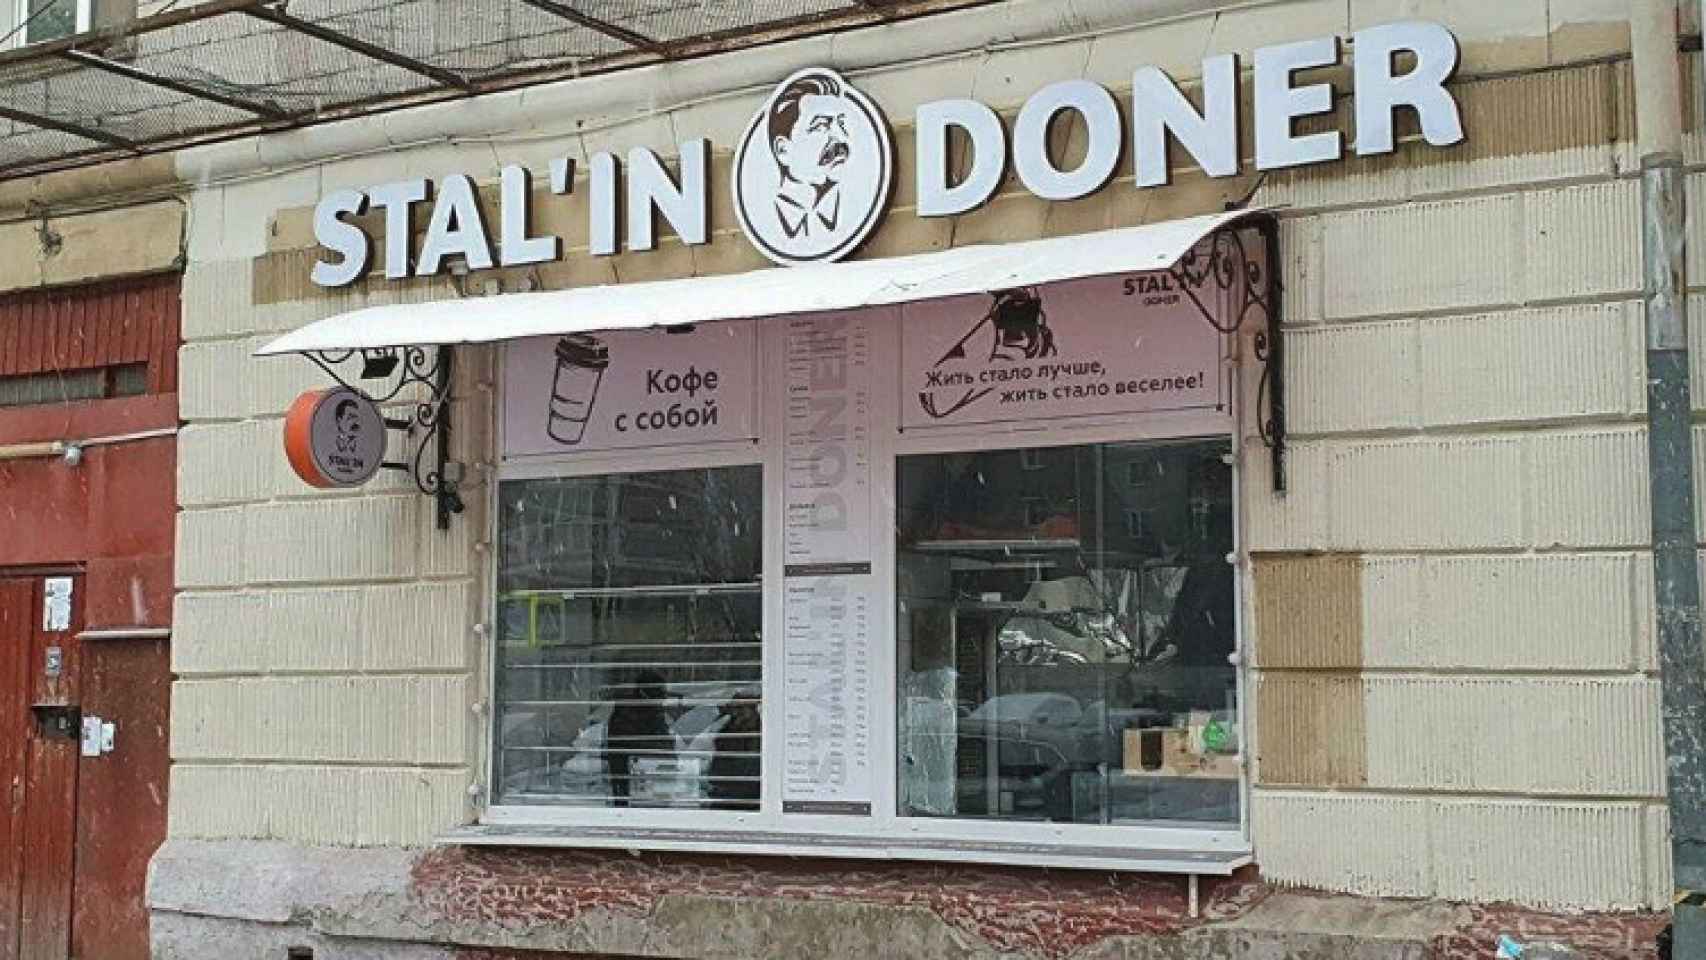 Imagen del local Stalin Kebab.